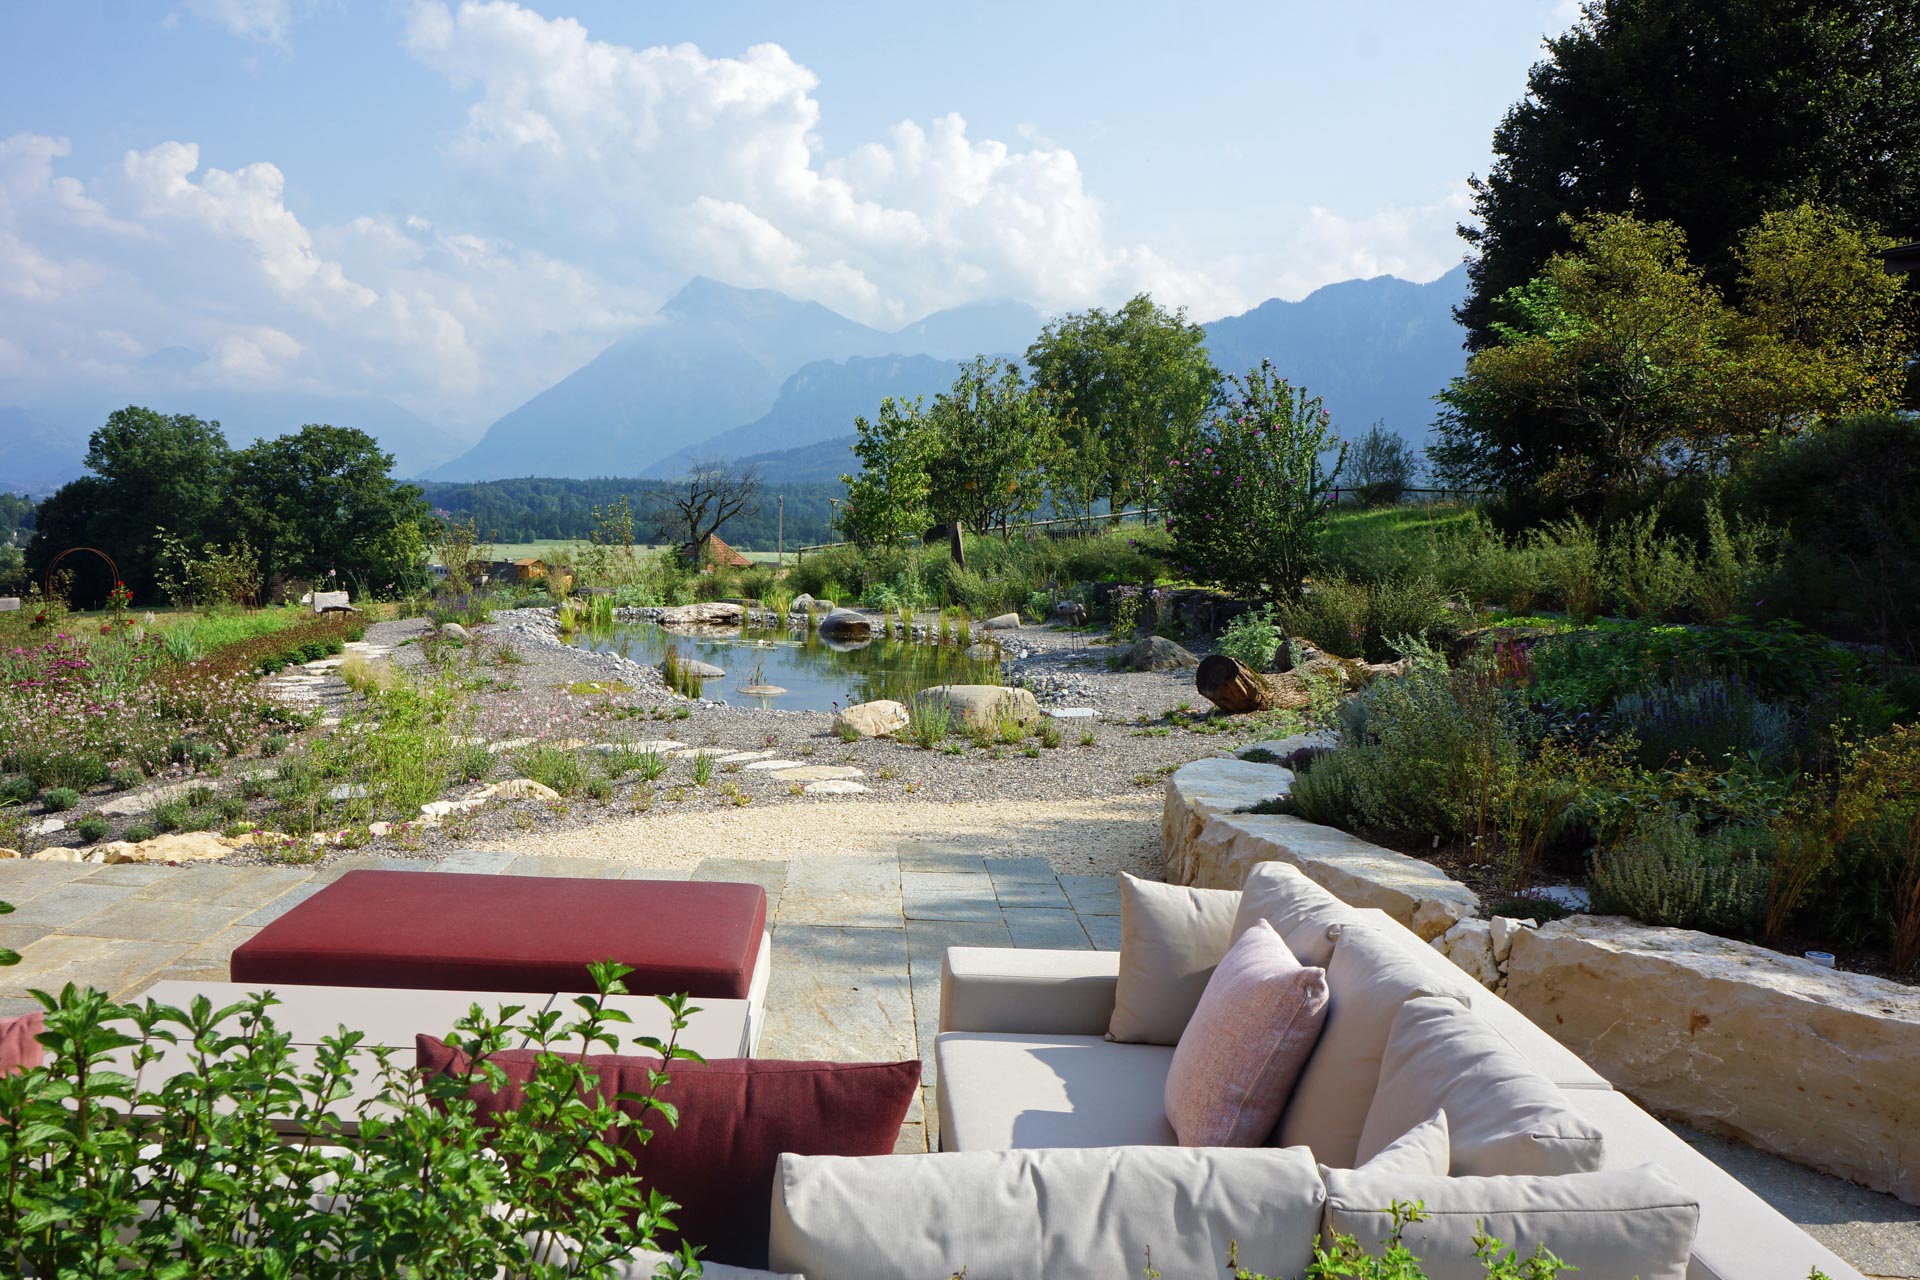 Gartengestaltung: Ein harmonisch angelegter Garten mit verschiedenen Pflanzen, Wegen und Sitzbereichen in ländlicher Umgebung